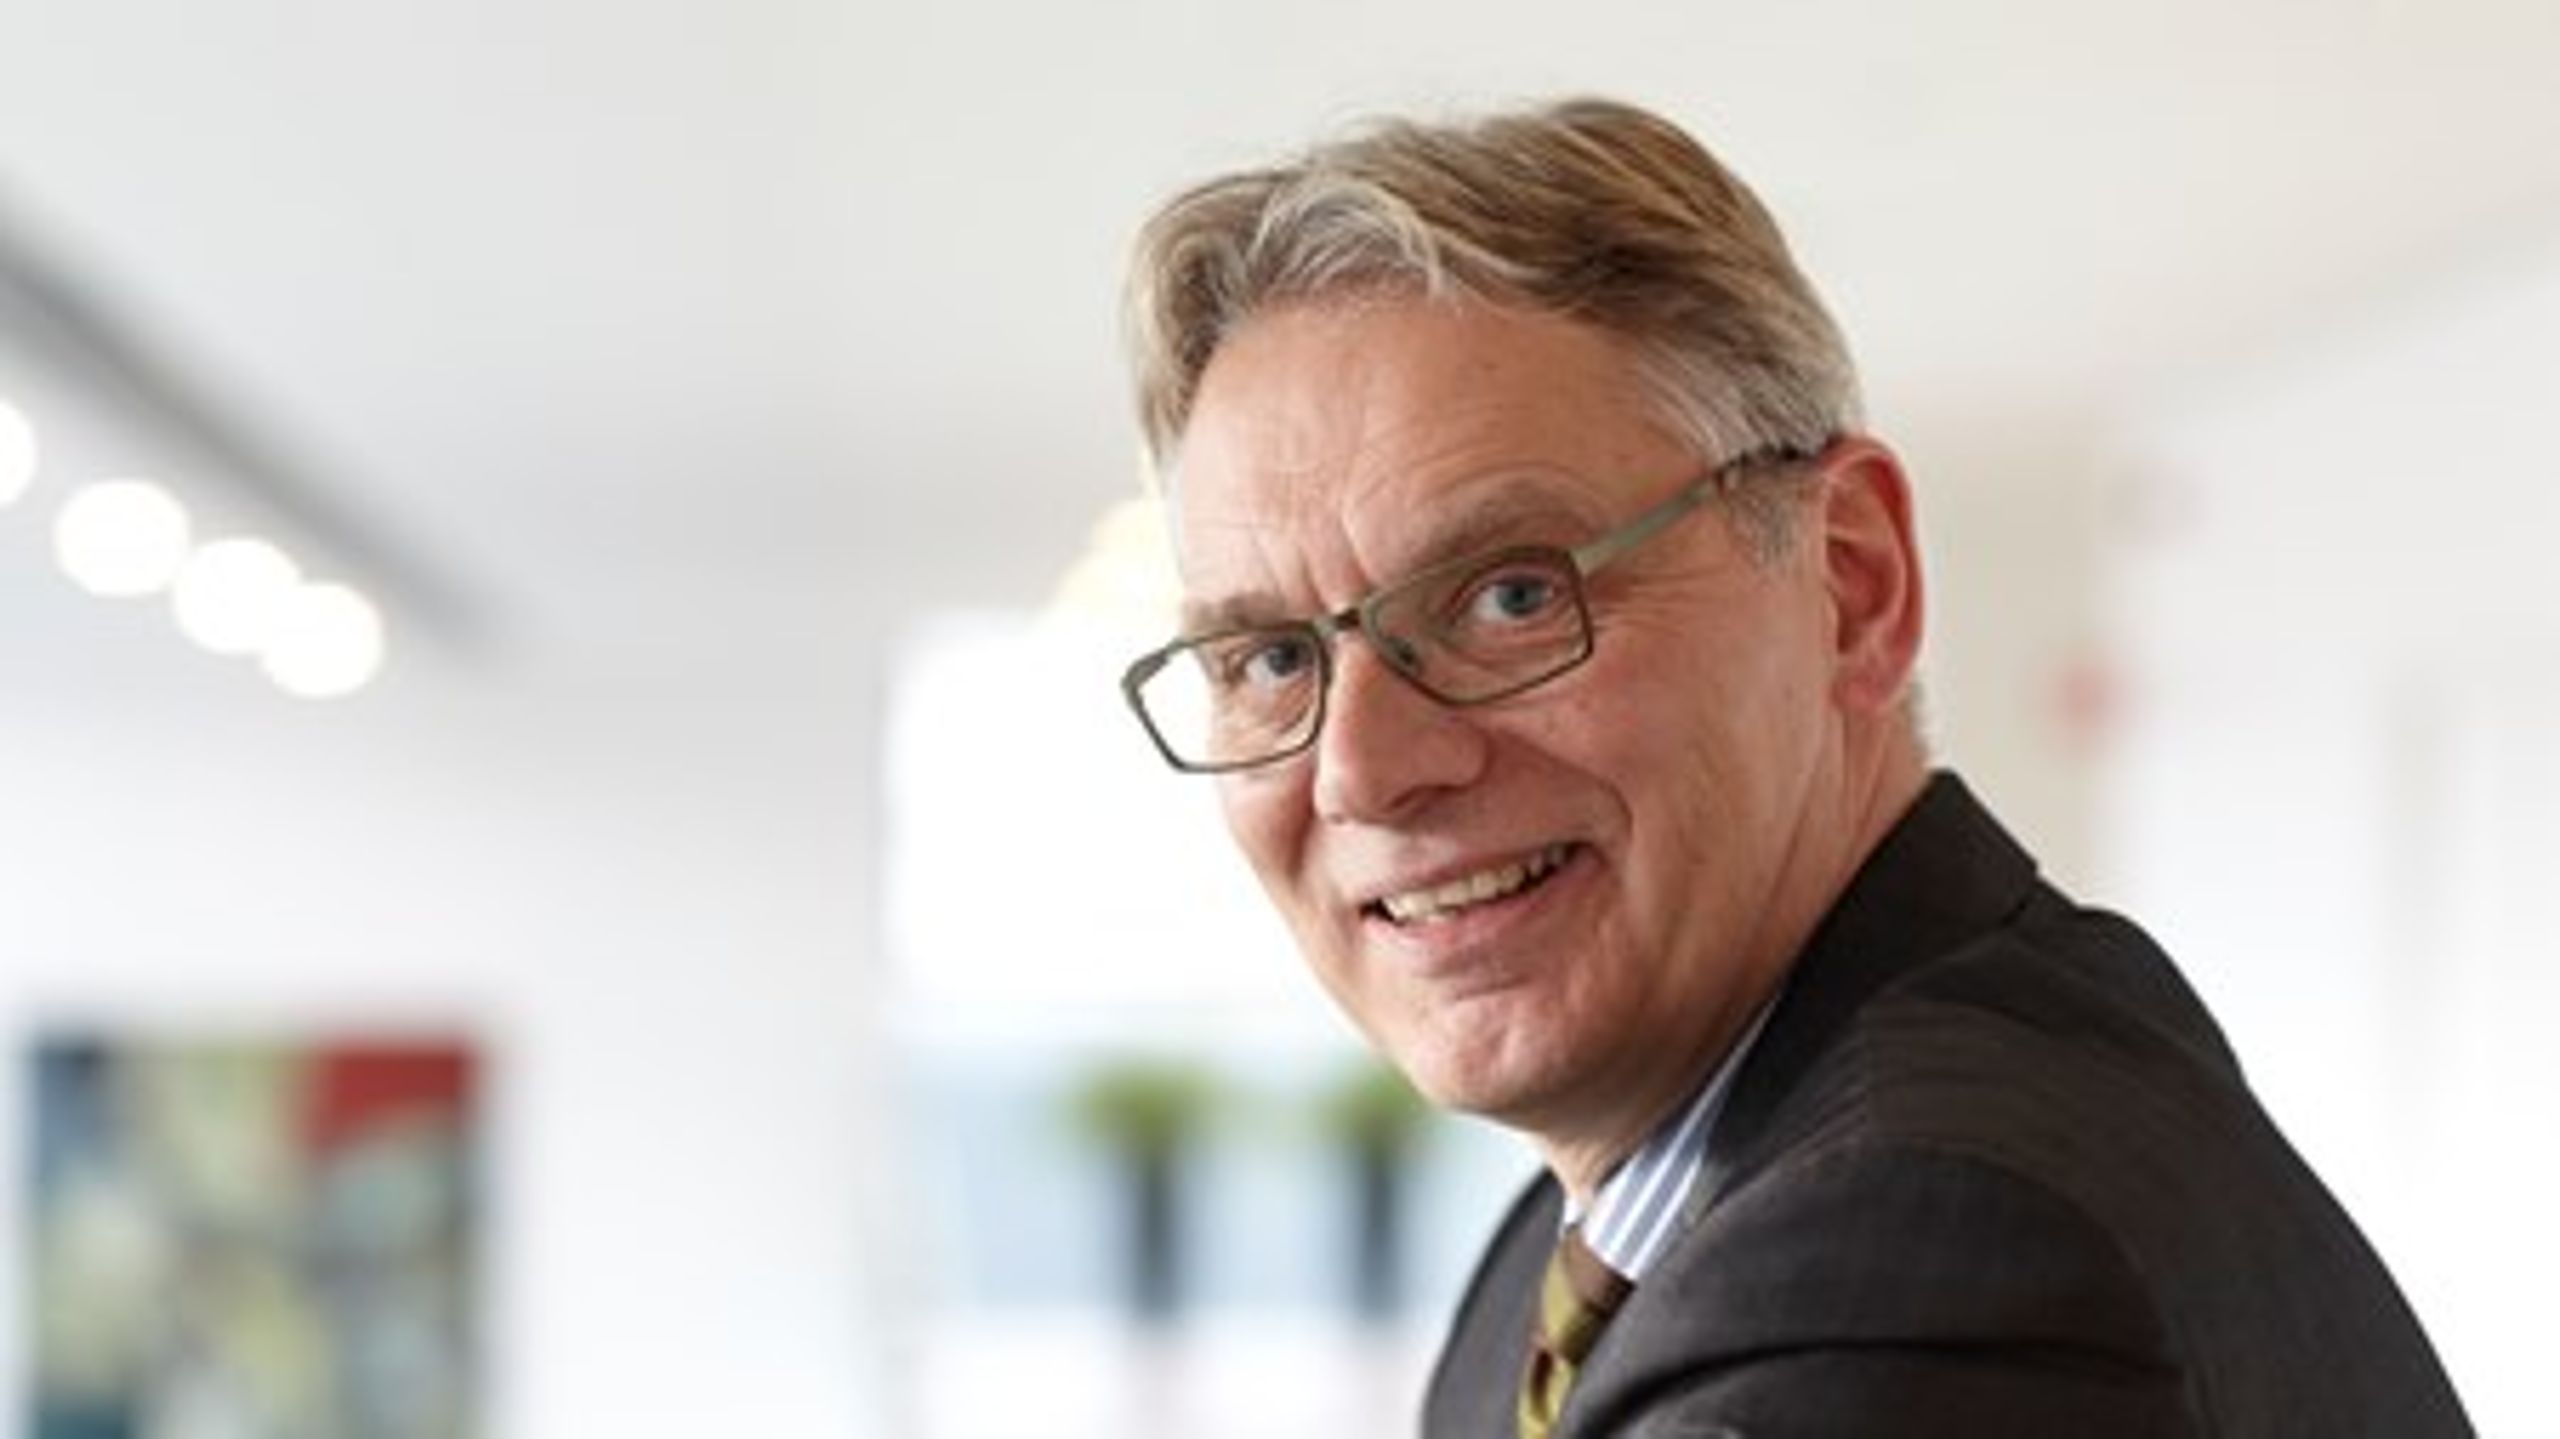 "Universiteterne har en stor rolle i at sikre et fagligt og samfundsansvarligt grundlag for fremtidig innovation," skriver Peter Høngaard Andersen, direktør for Innovationsfonden.<br>